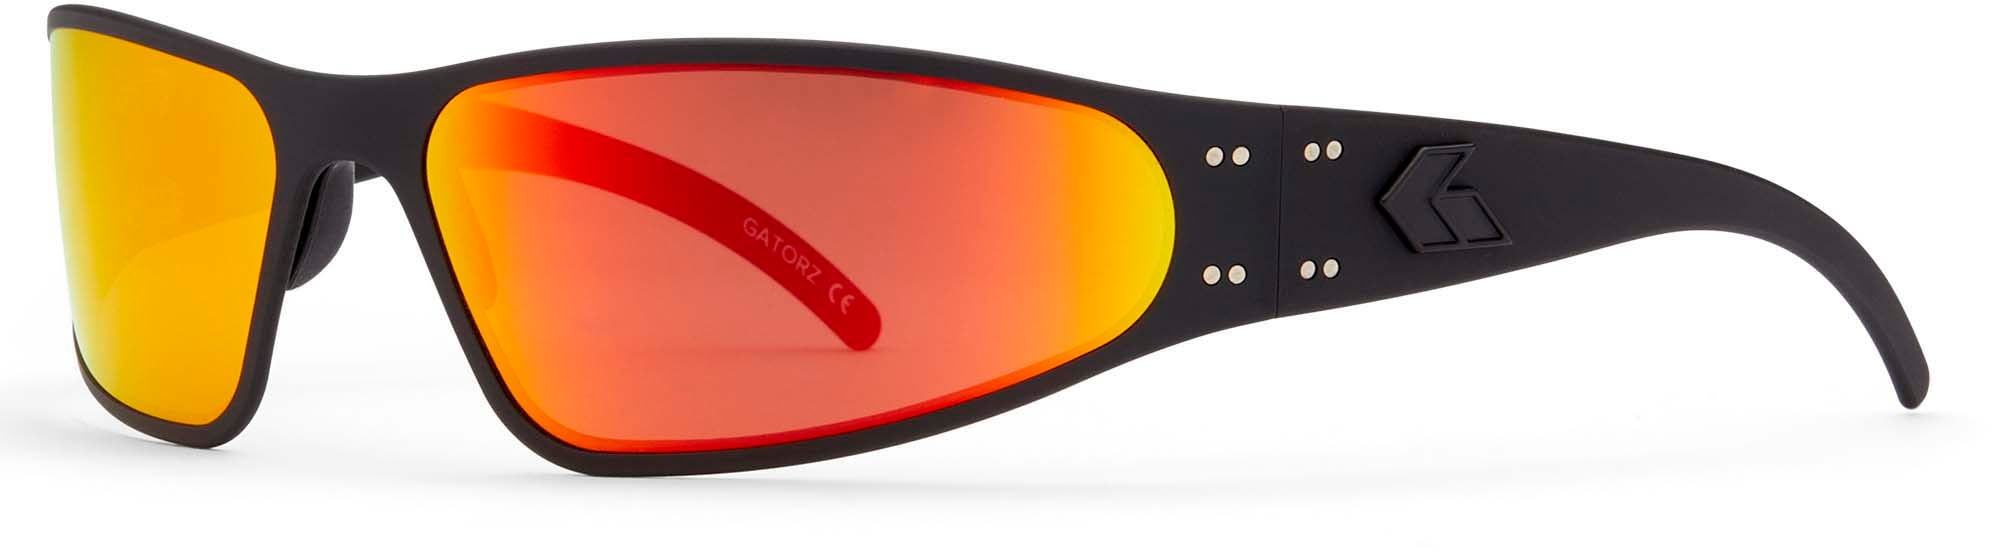 Gatorz Wraptor Sunglasses Blackout Frame Smoke Polarized w/: WRABLK13PMBP